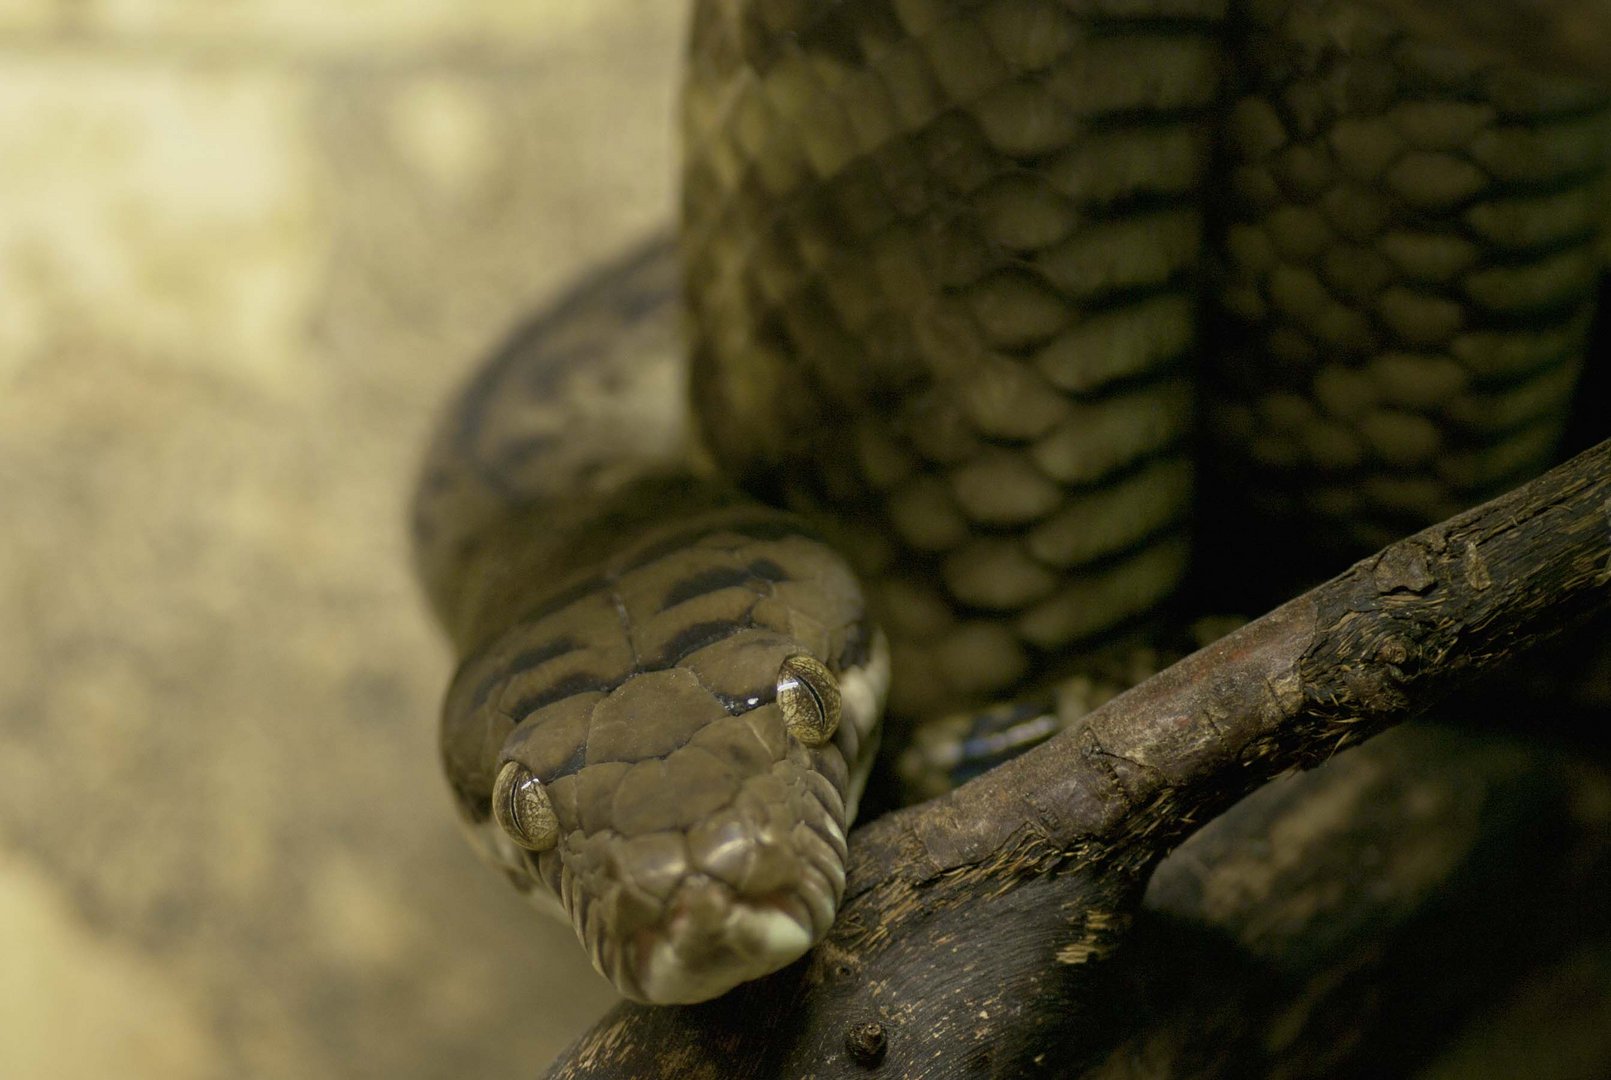 Neuguinea-Amethystpython - eine wenig erforschte Pythonart